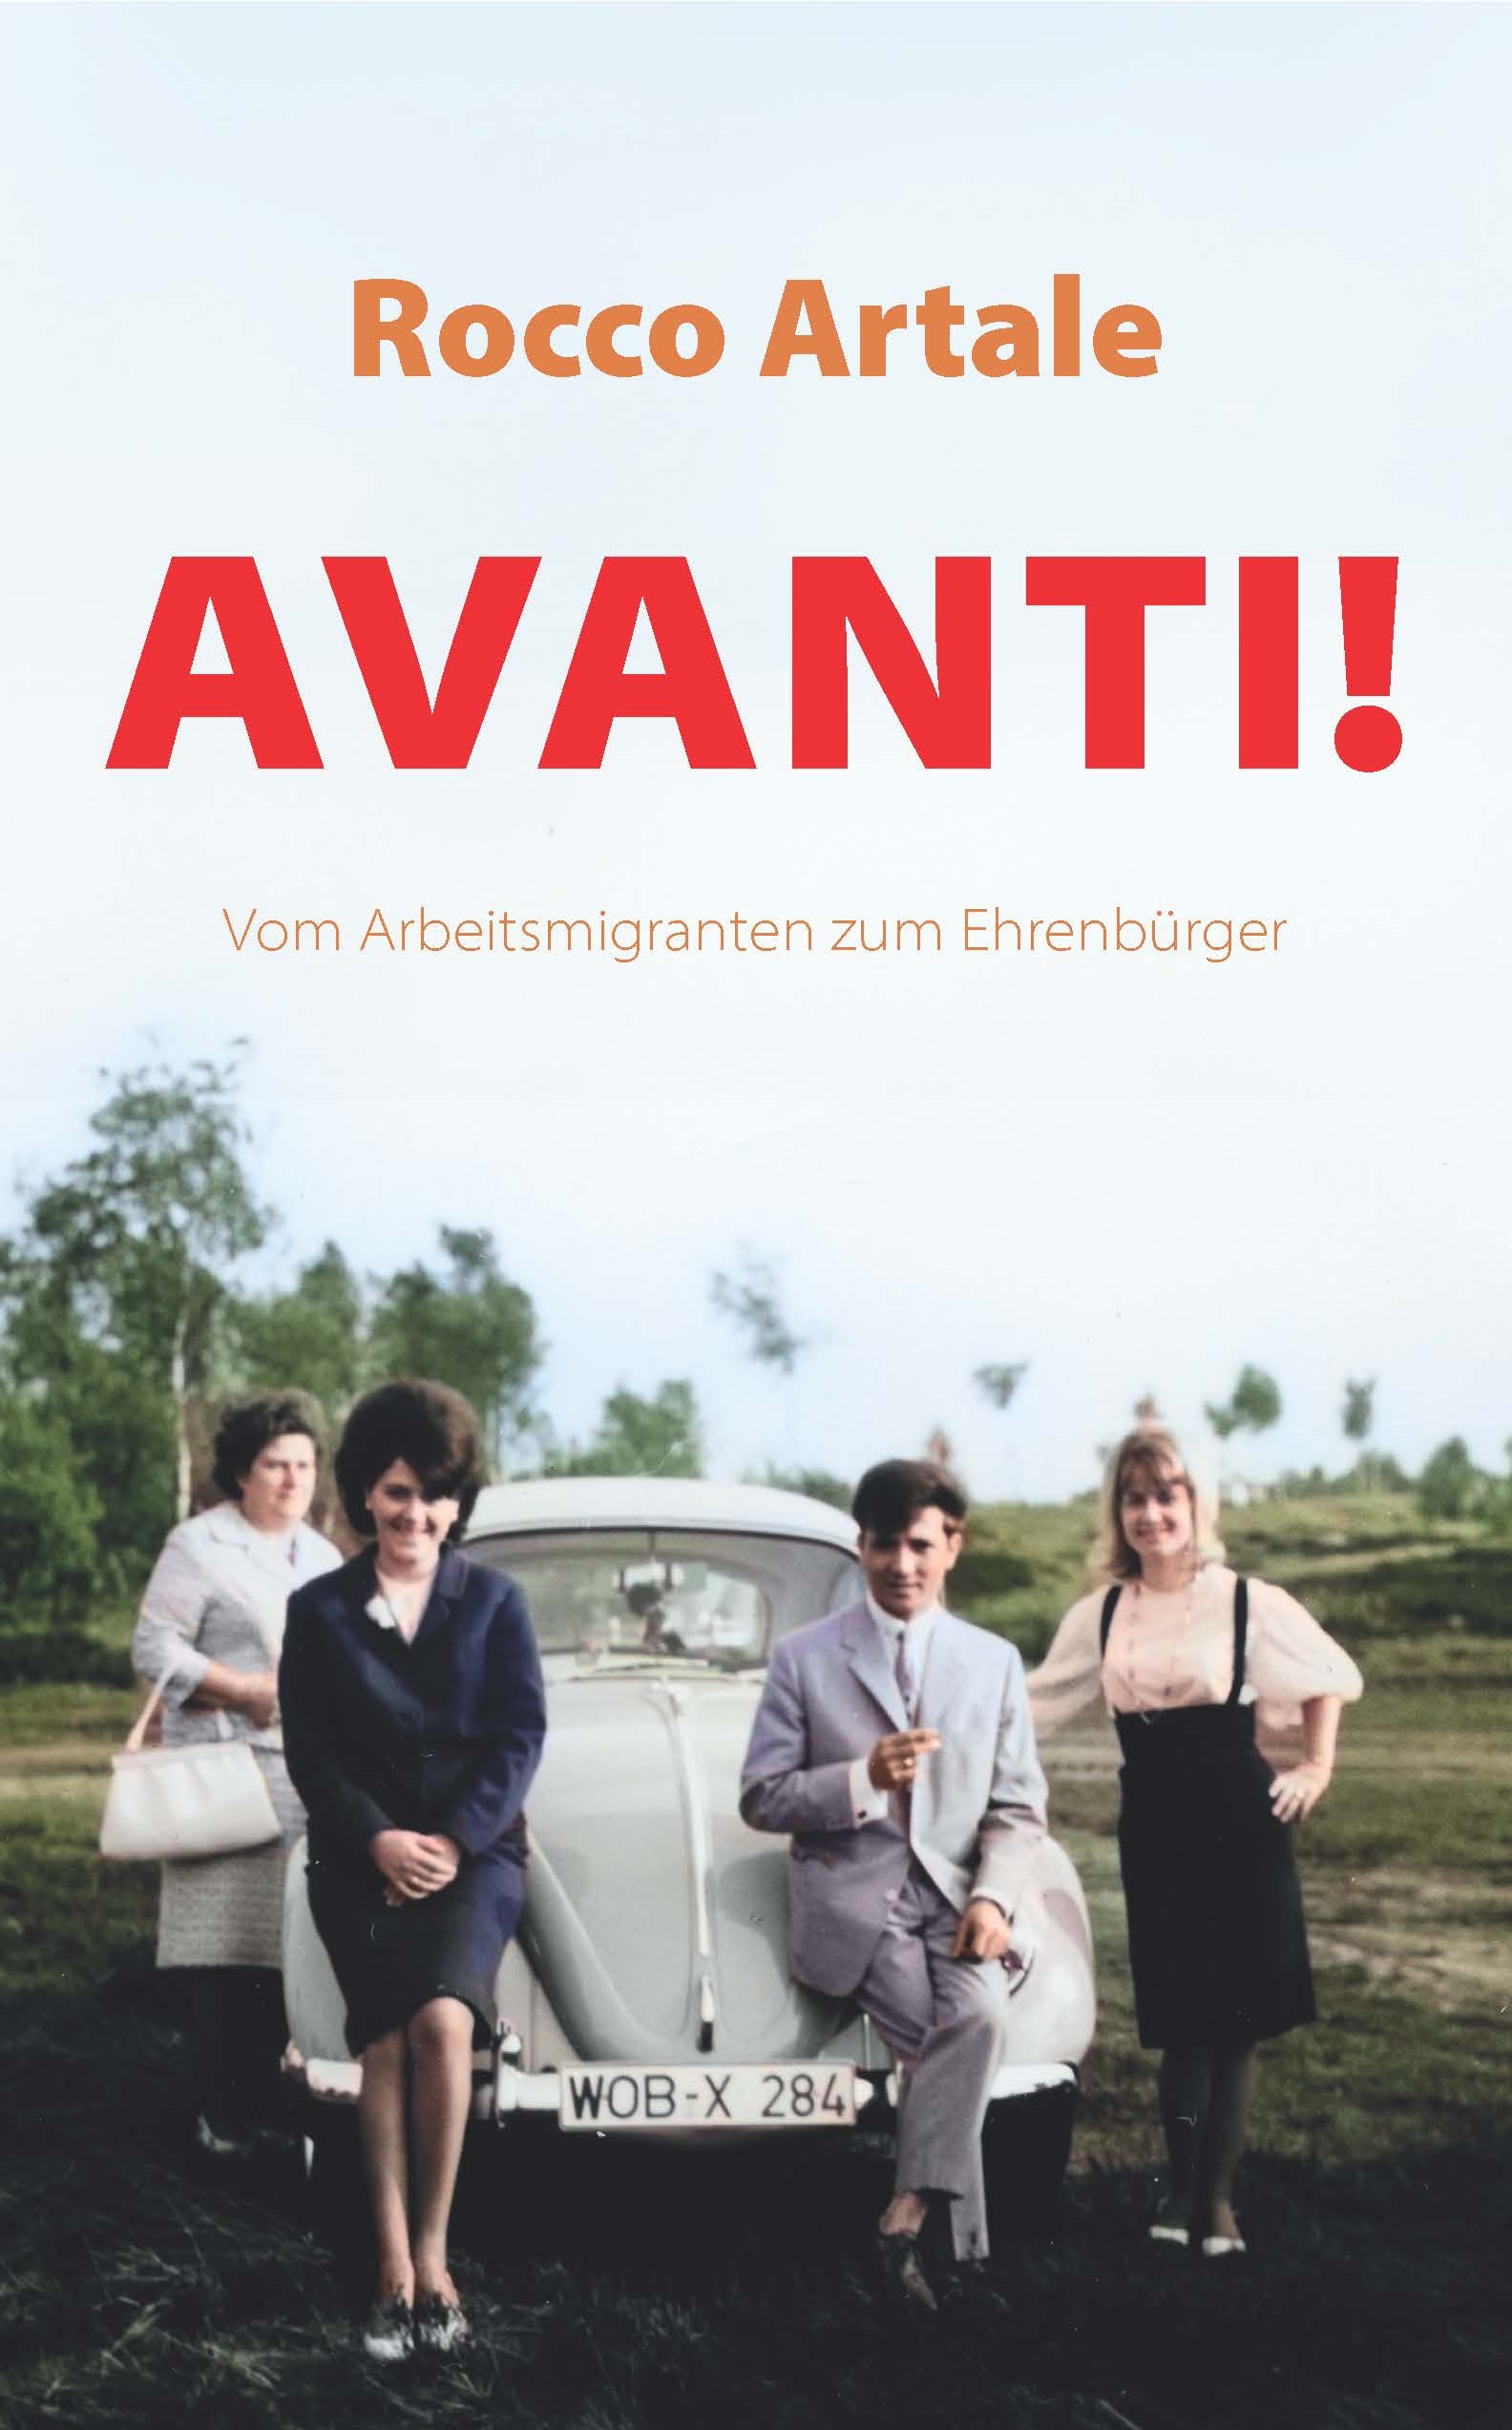 Titelblatt des Buchs "Avanti! Vom ArBeitsmigranten zum Ehrenbürger" von Rocco Artale